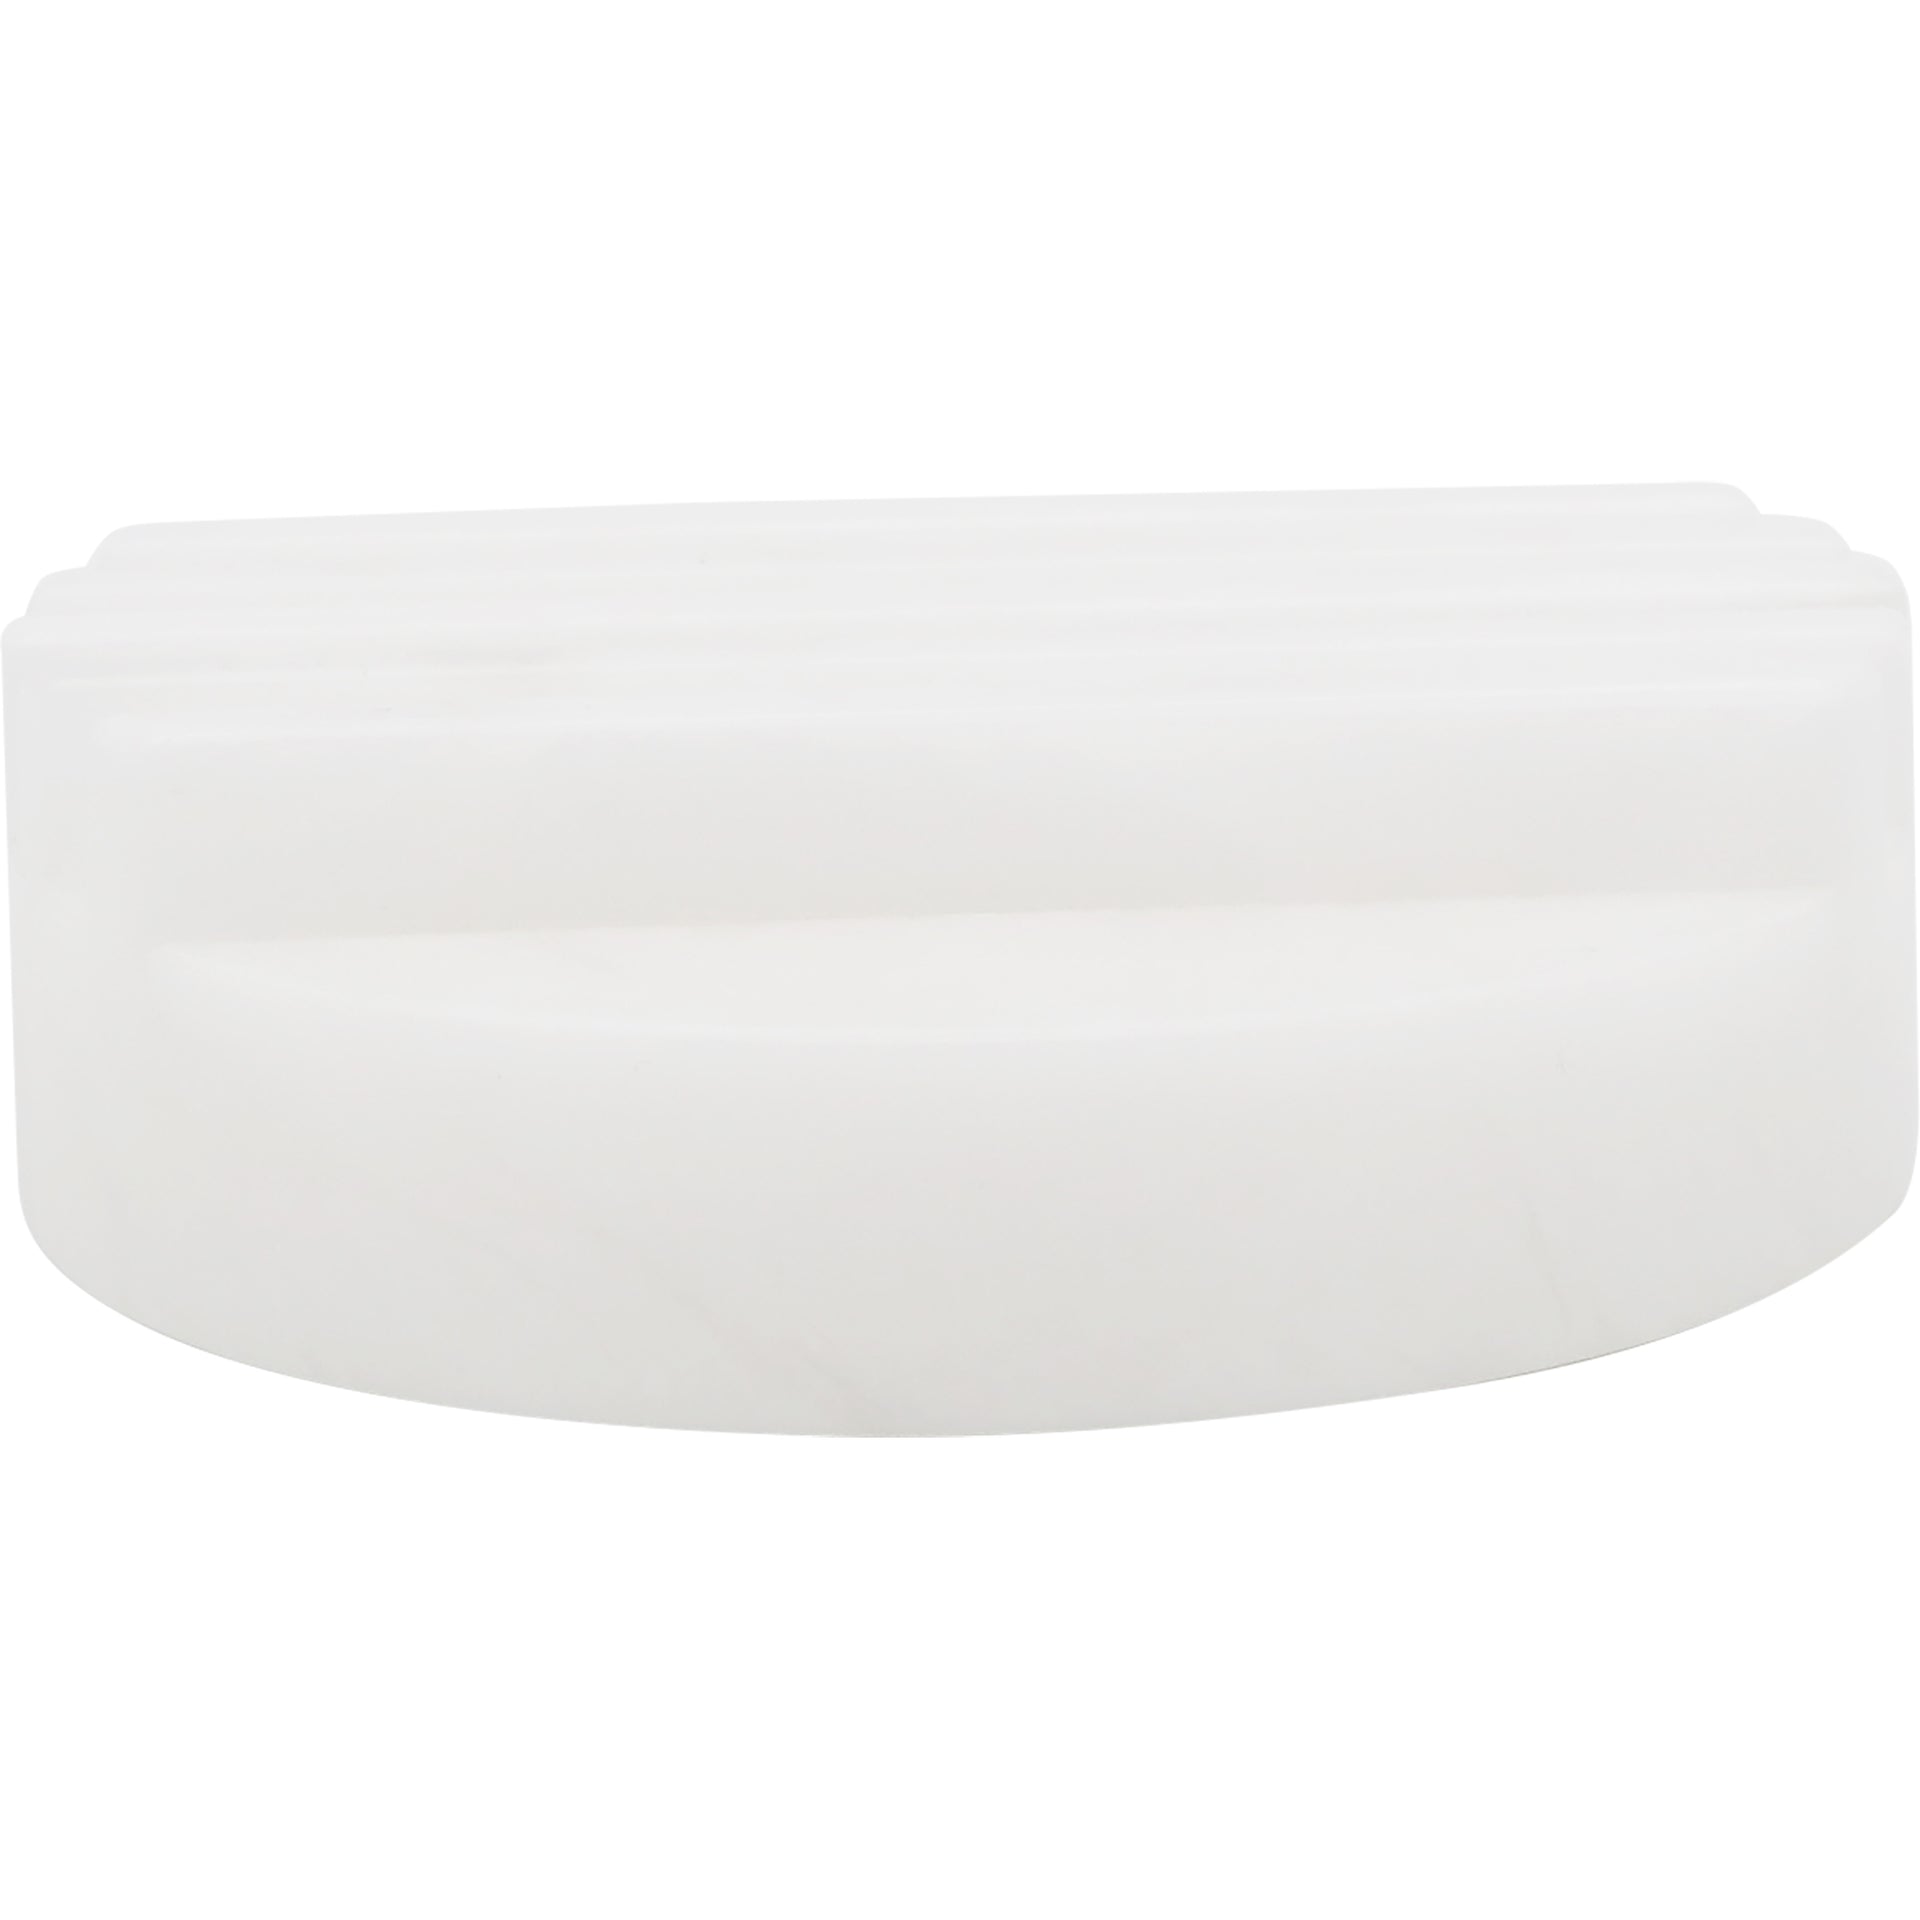 Ariane round soap dish